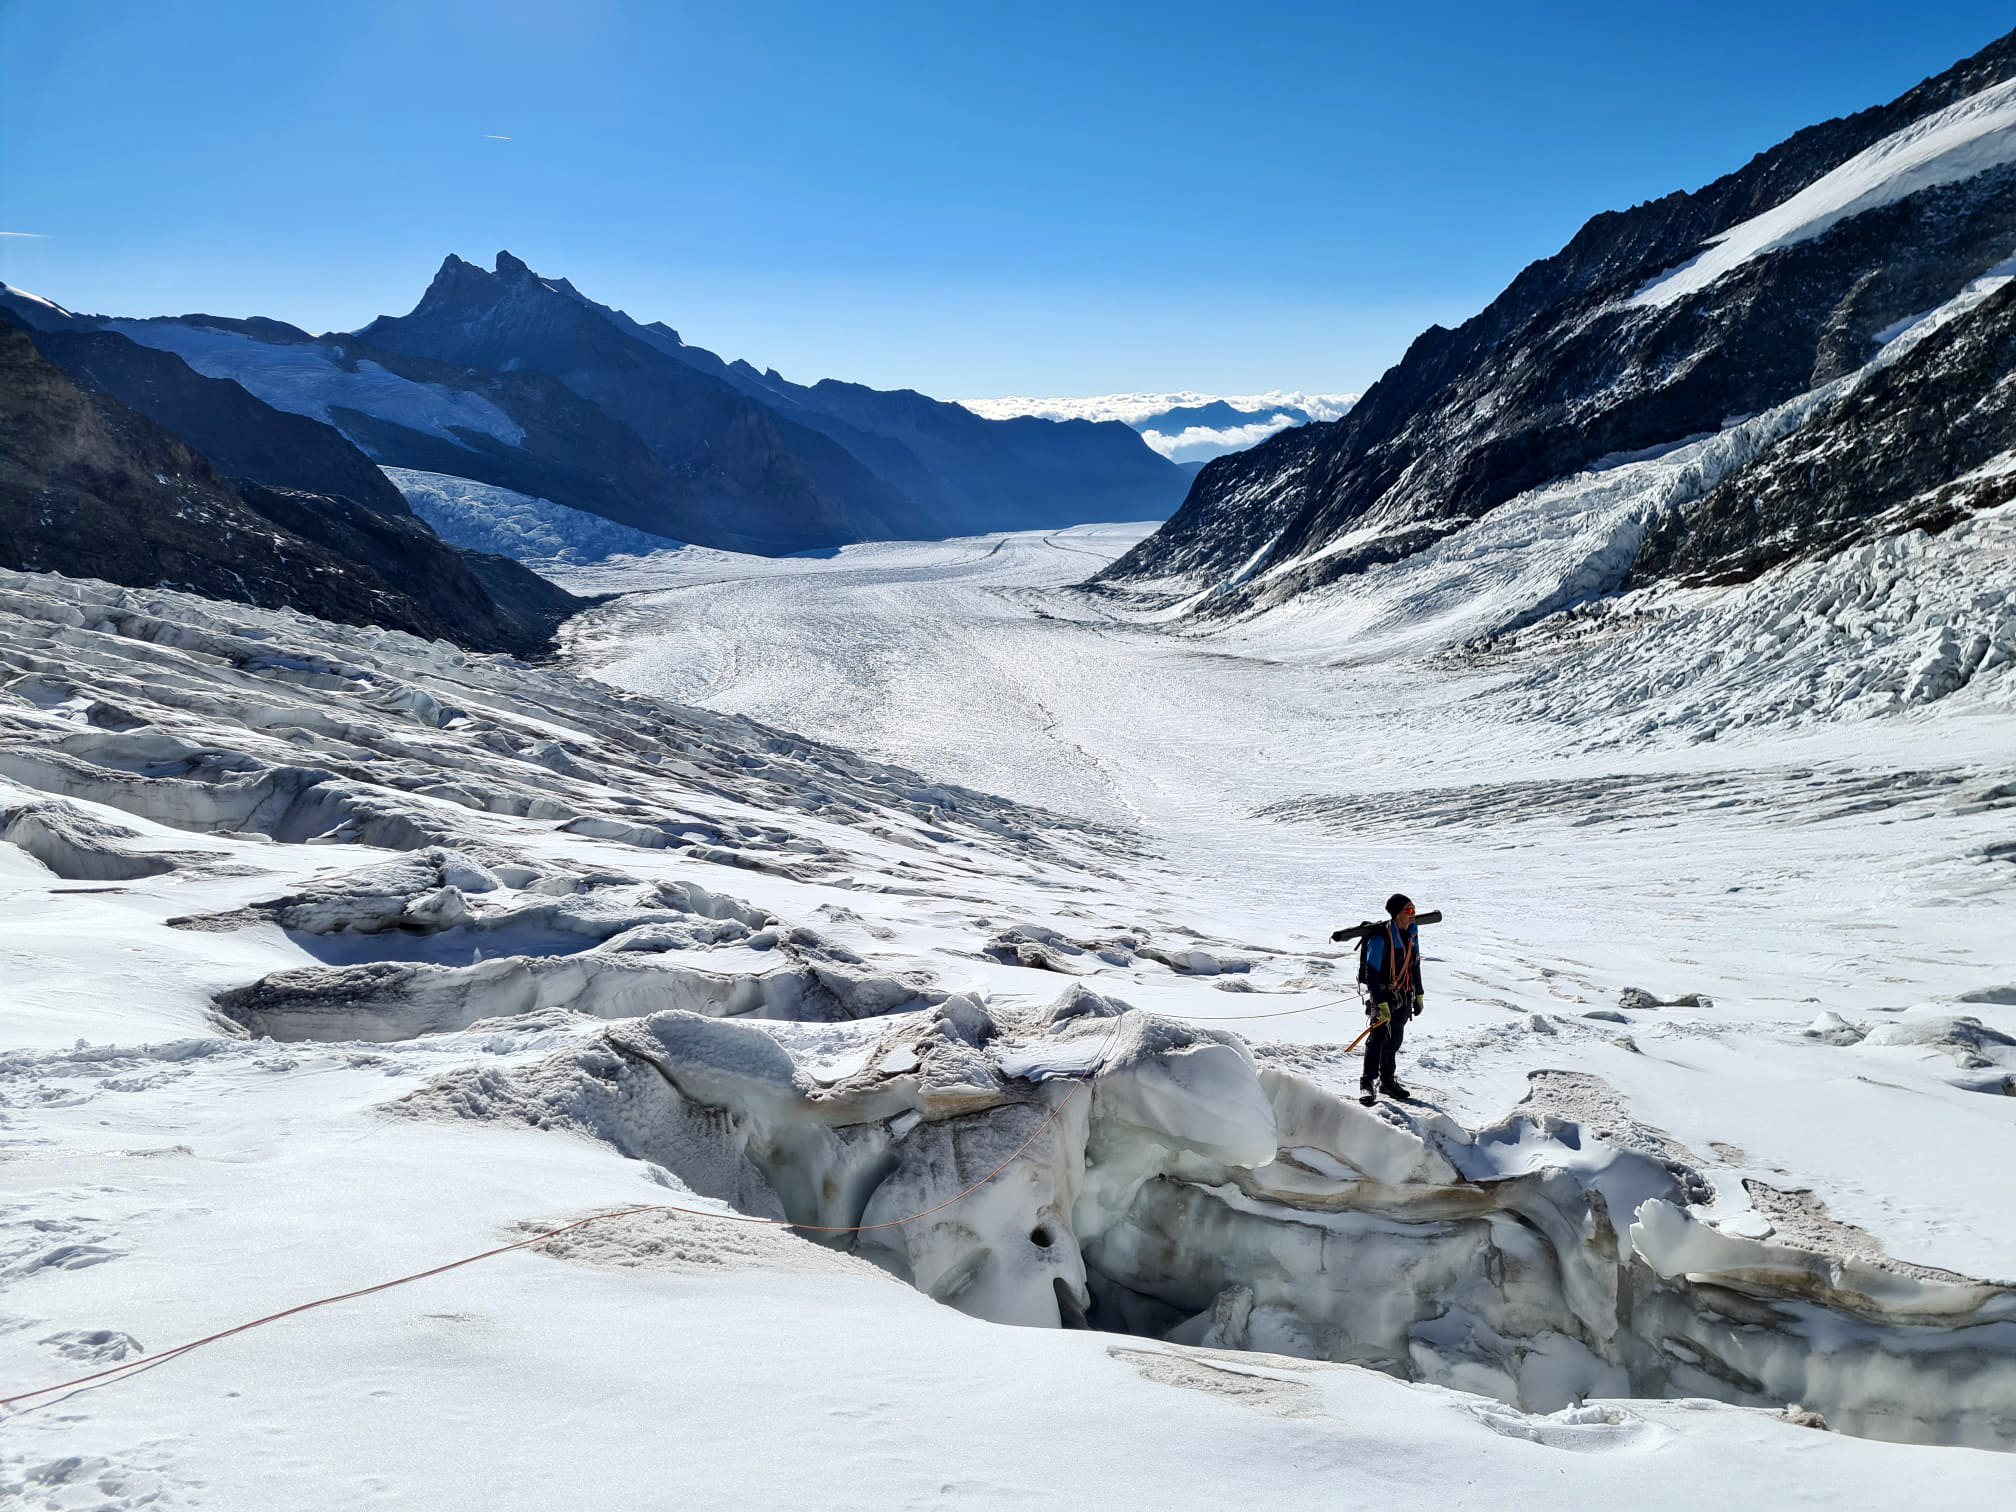 Gletscherschmelze betrifft uns alle | Duda.news